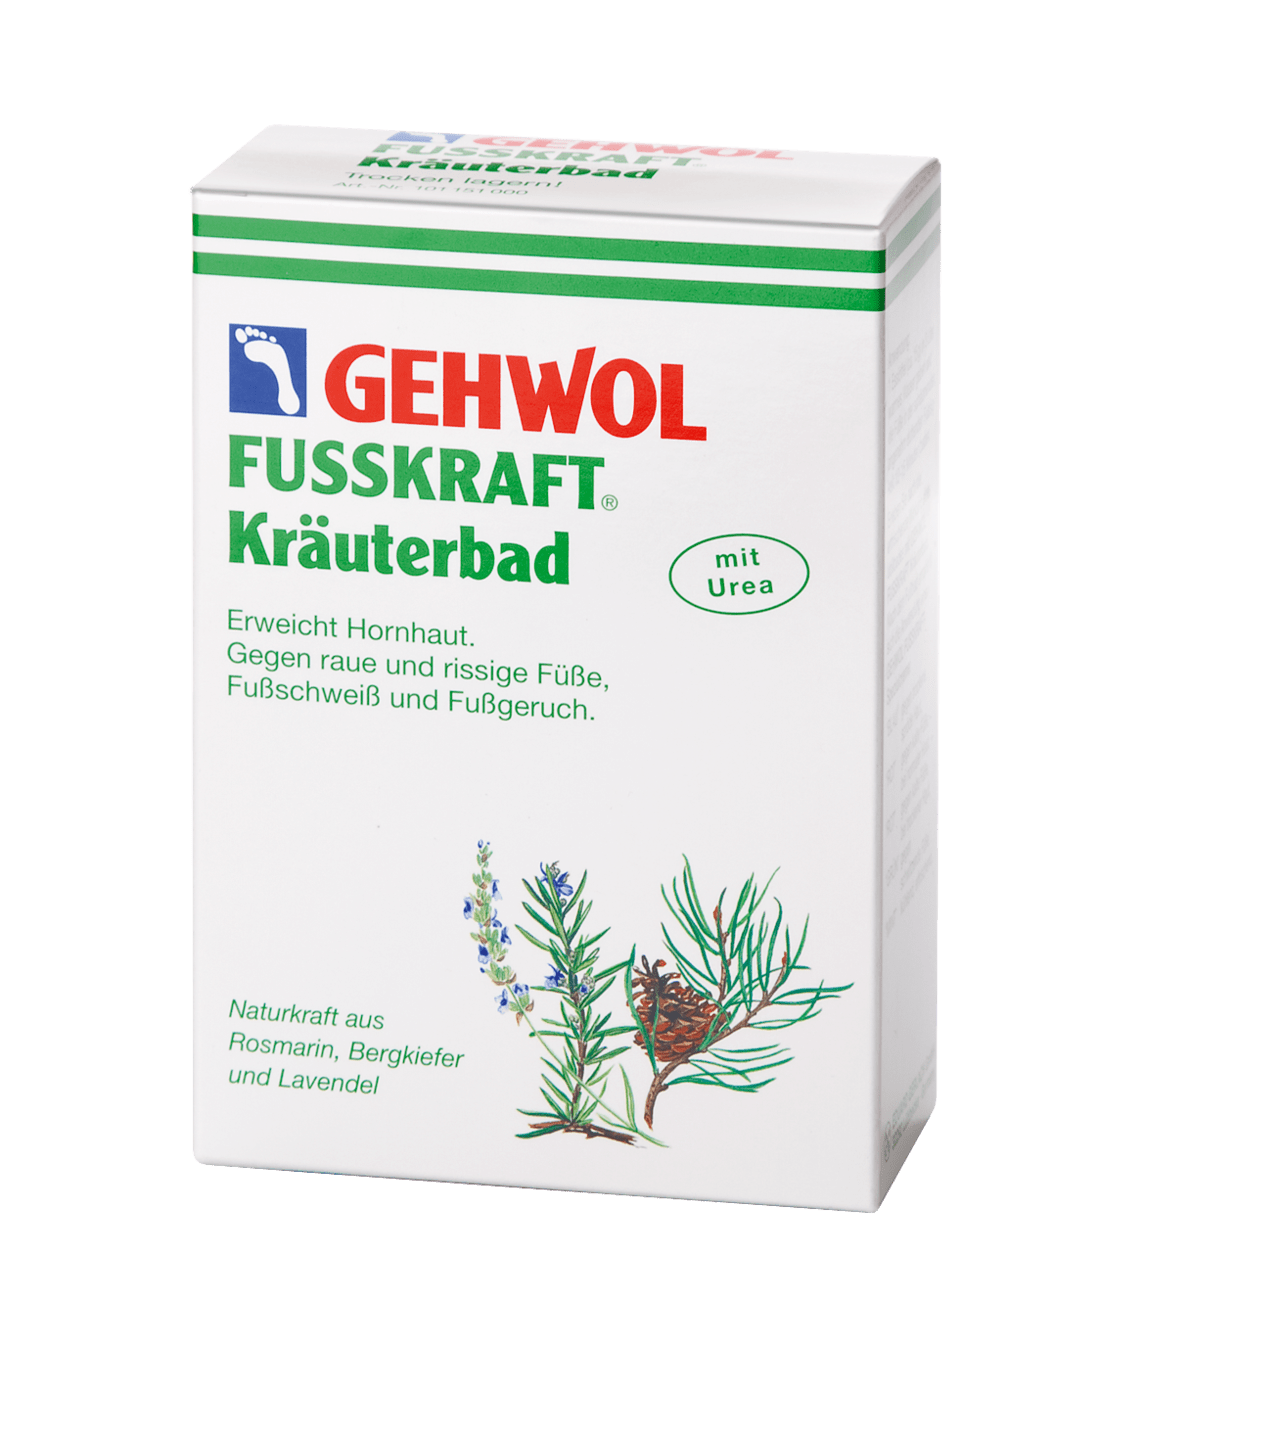 GEHWOL - Kräuterbad, 250 g